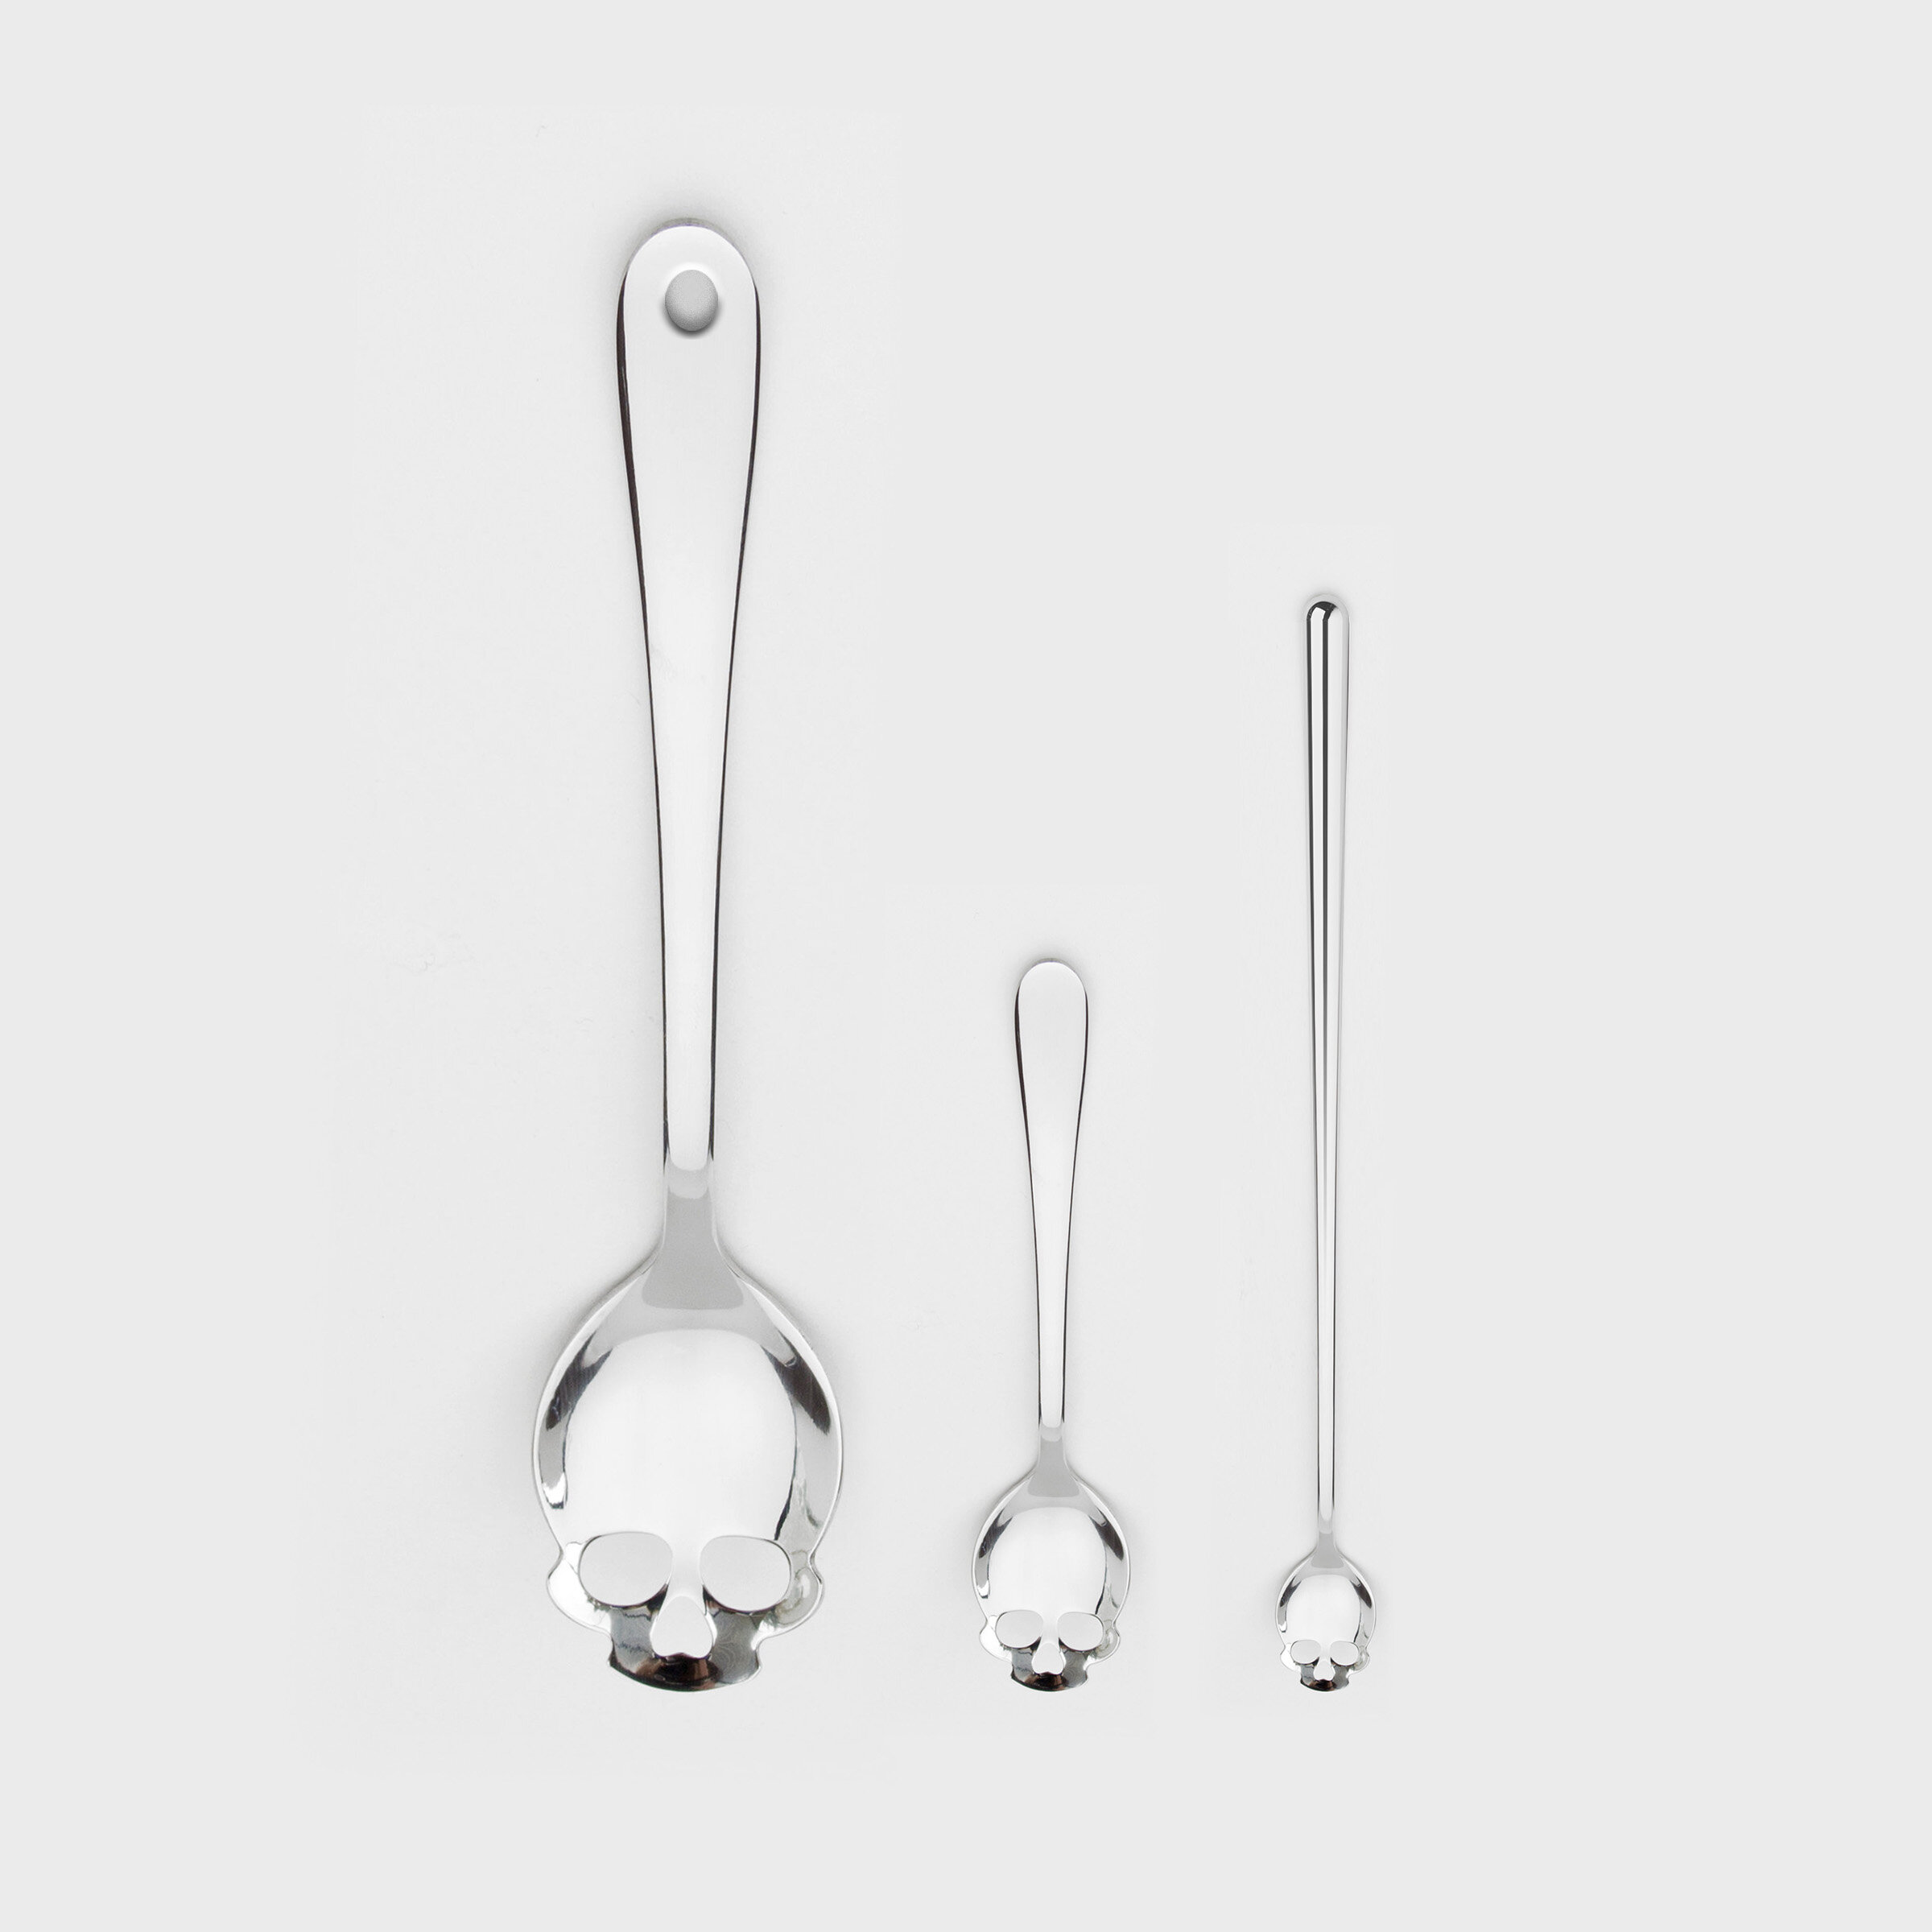 Range of Skull Kitchen Spoons